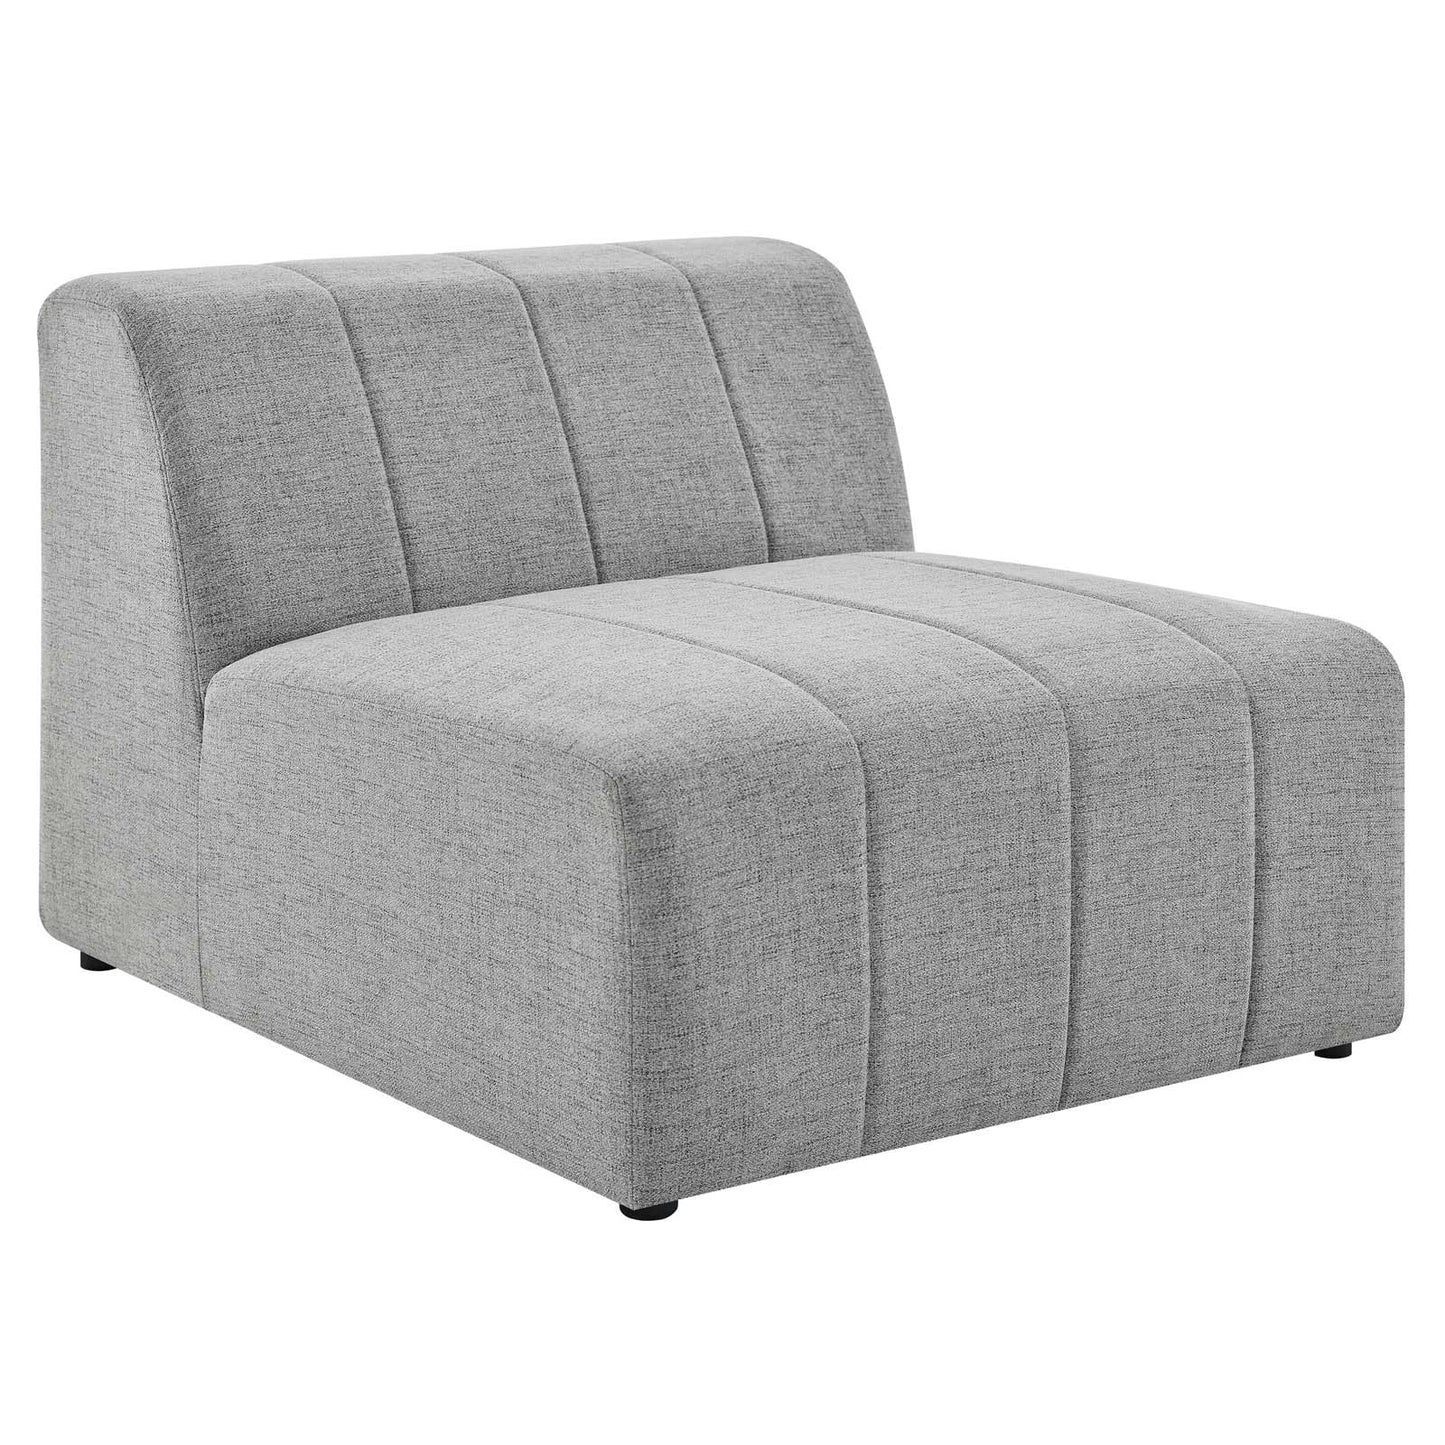 Bartlett Upholstered Fabric Armless Chair Light Gray EEI-4398-LGR